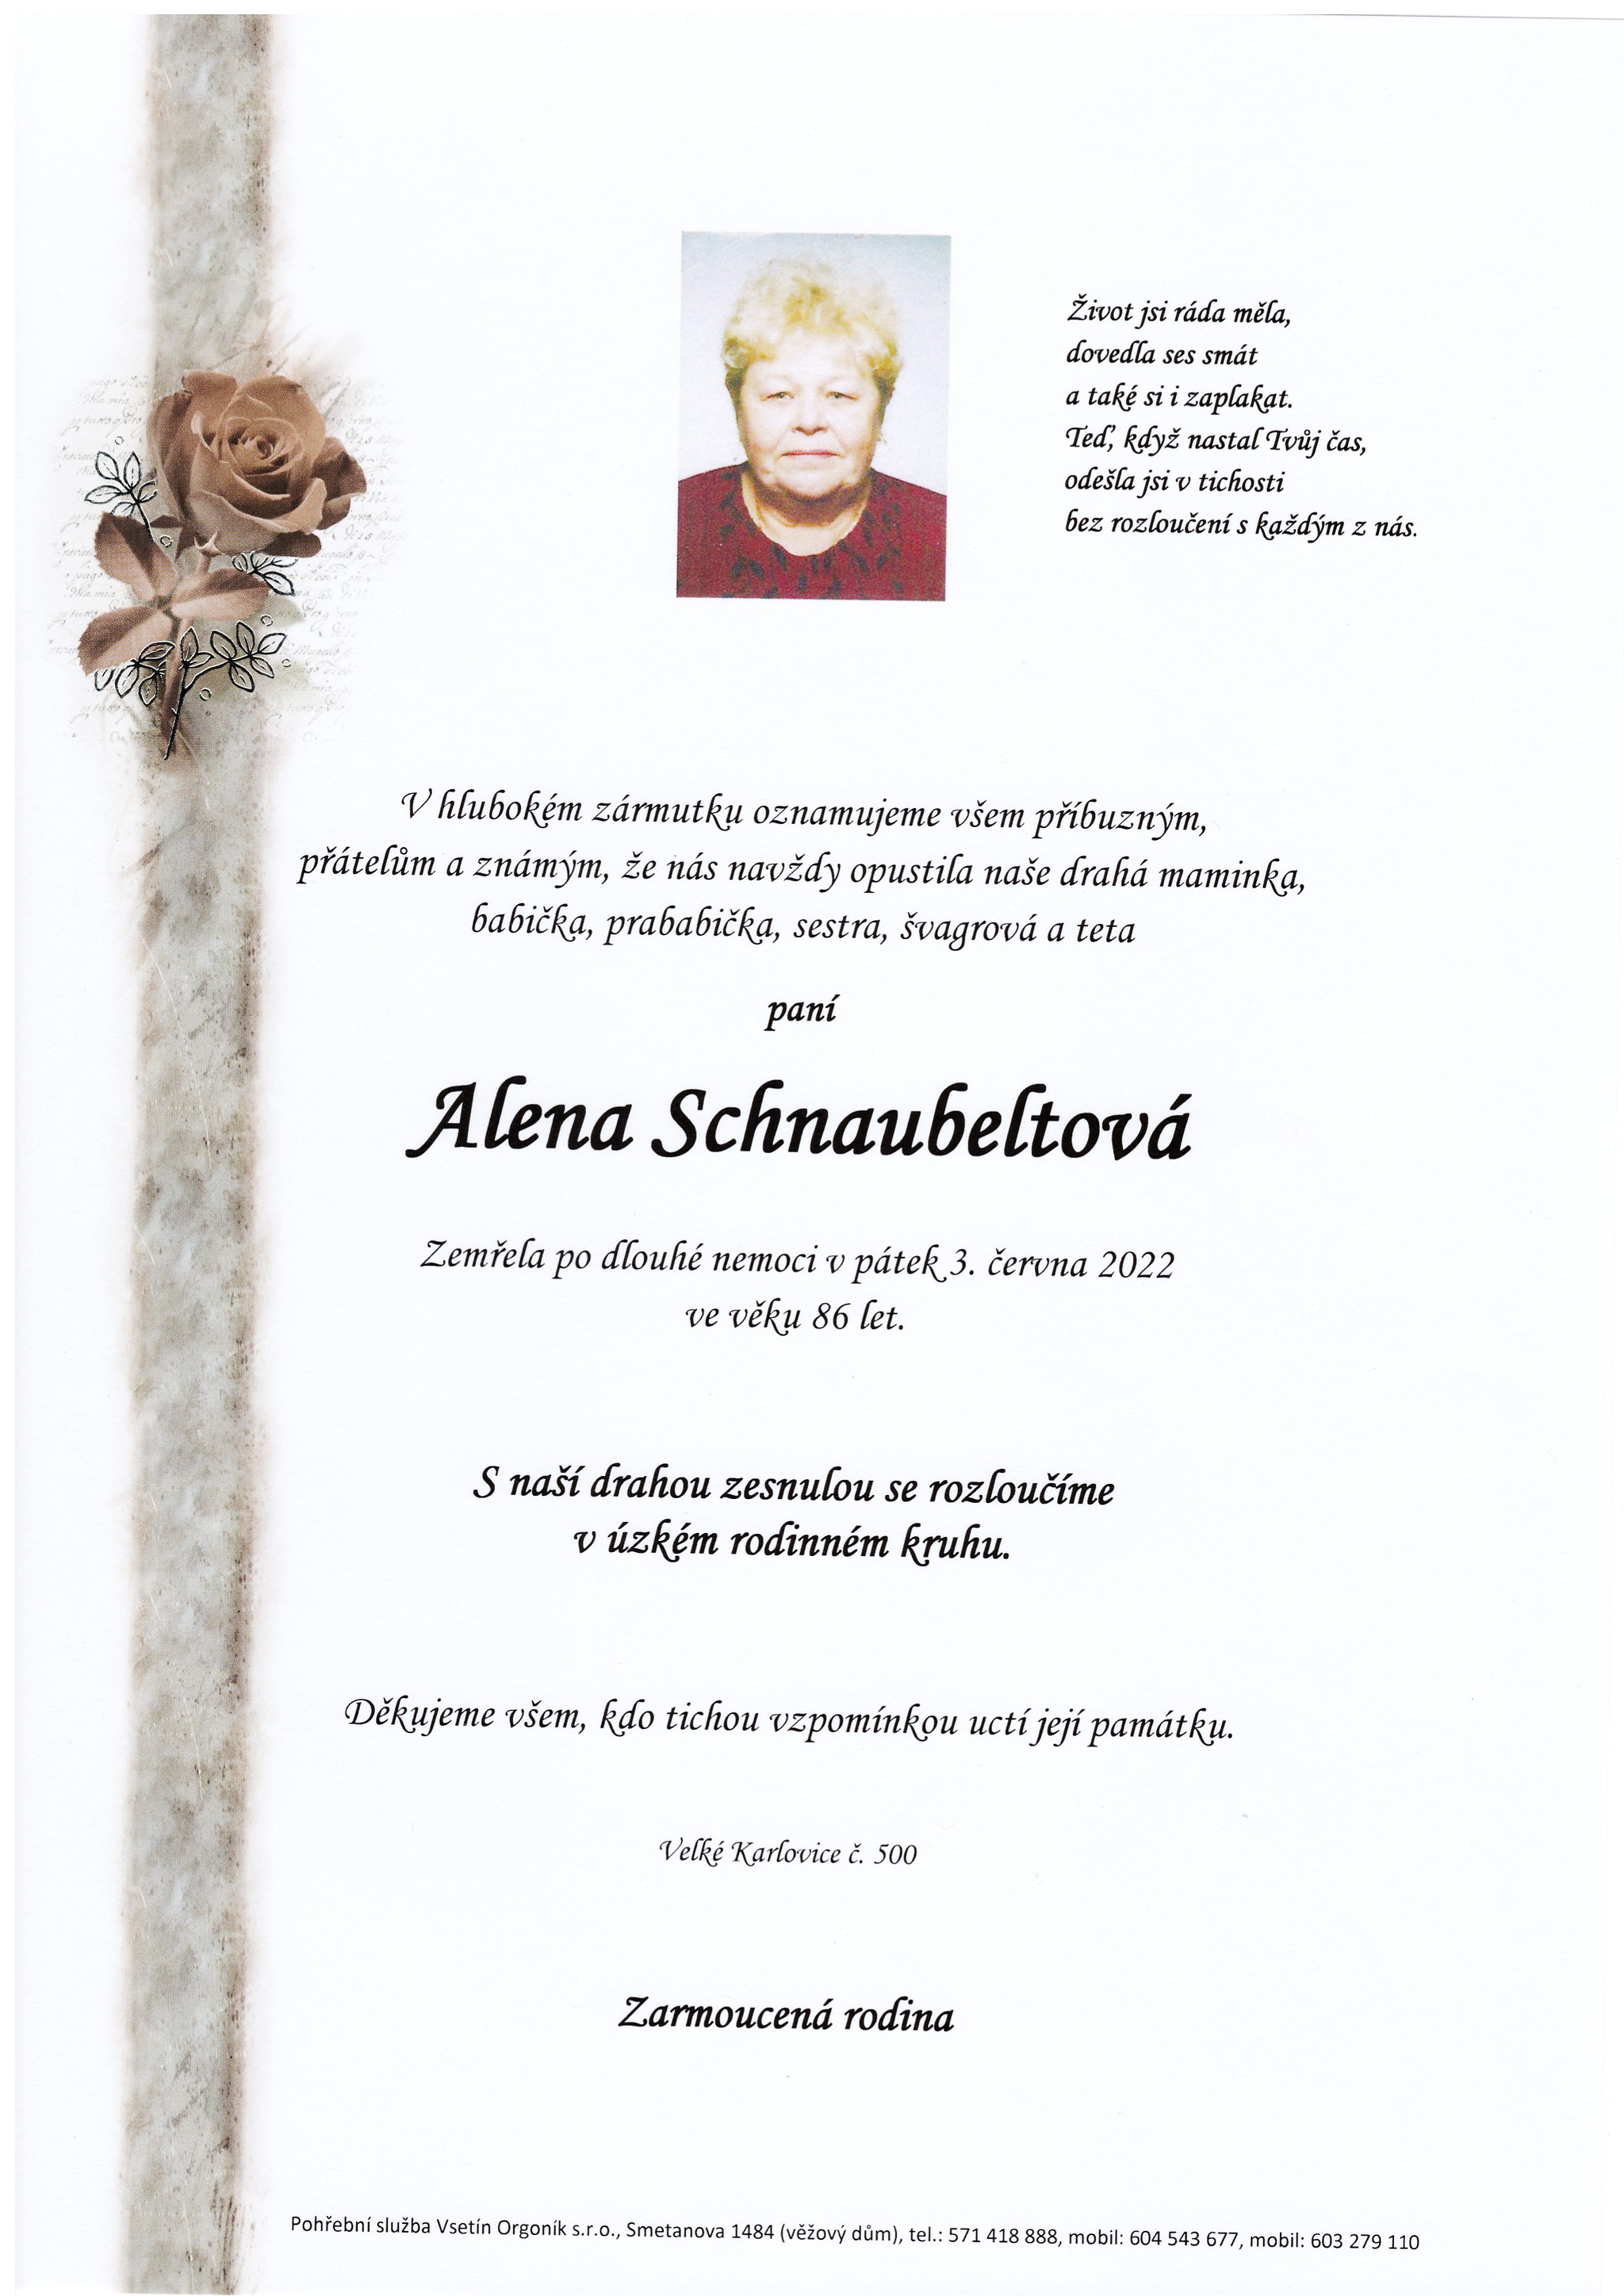 Alena Schnaubeltová